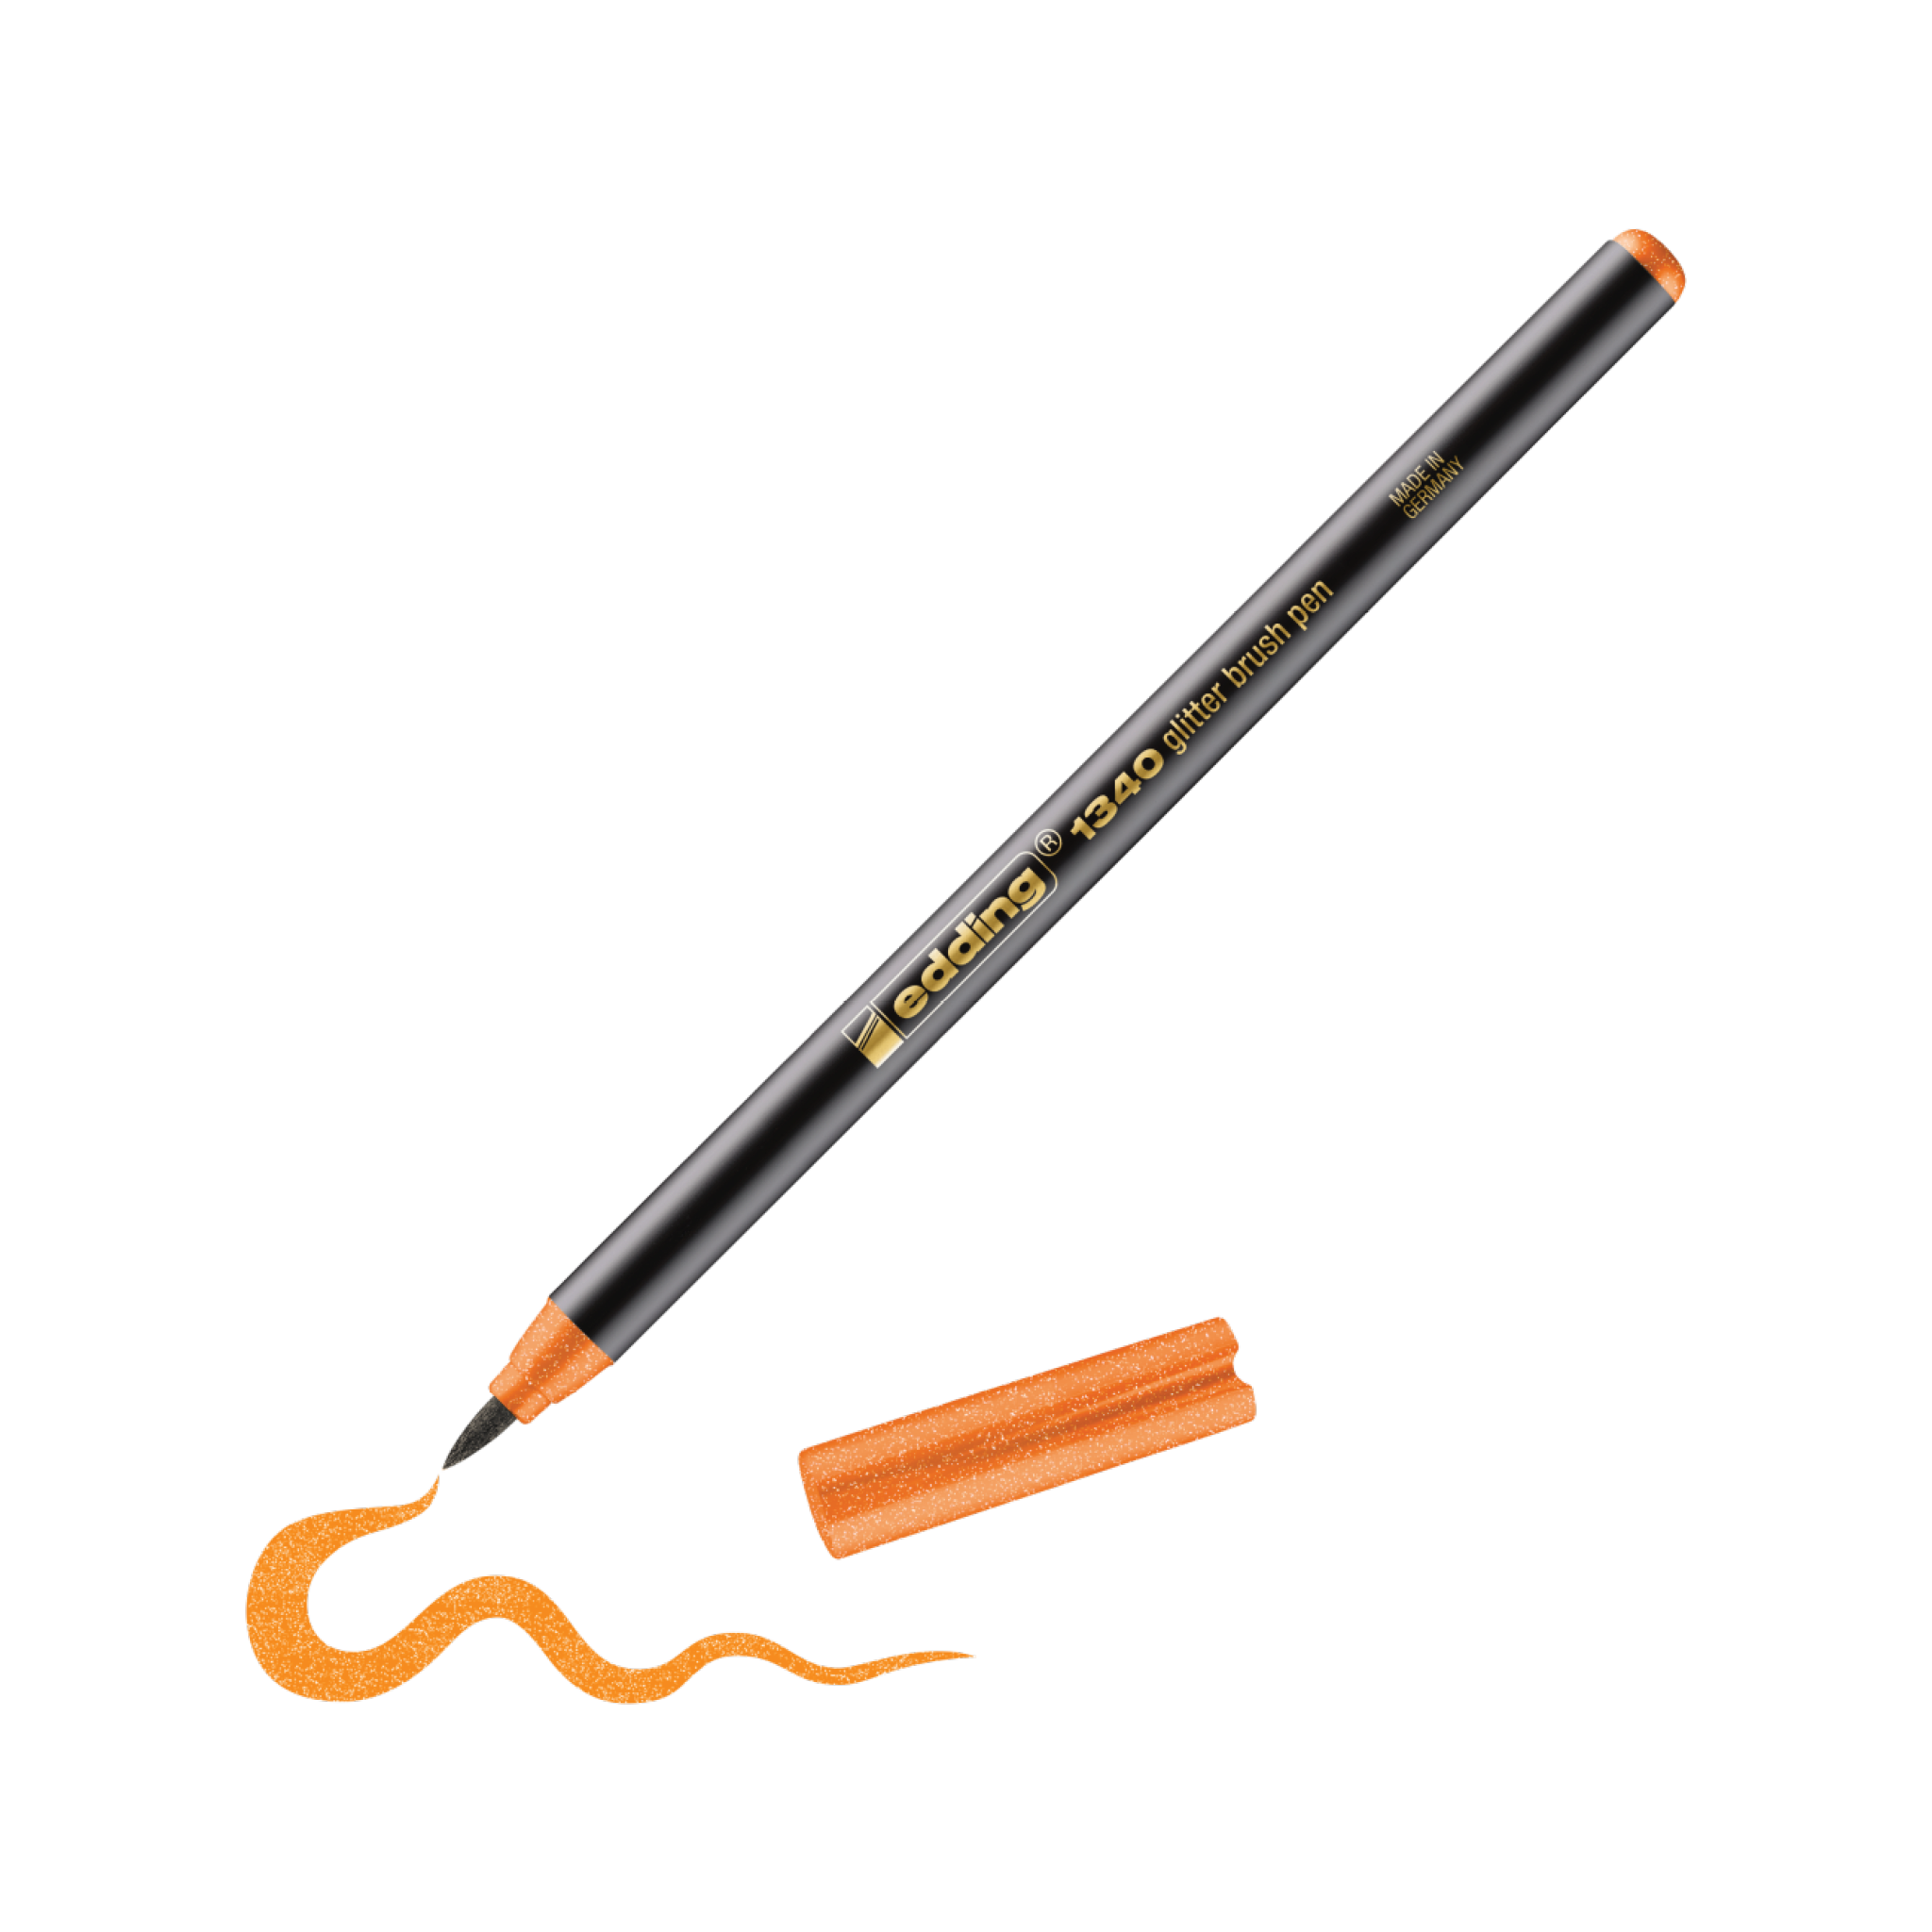 Eine realistische Abbildung eines edding 1340 Glitzer-Pinselstifts mit abgebrochener Spitze neben einer gezeichneten Wellenlinie, die eine aktive Verwendung suggeriert. Der Stift trägt die Aufschrift „Caran d'Ache Luminance 6901“.